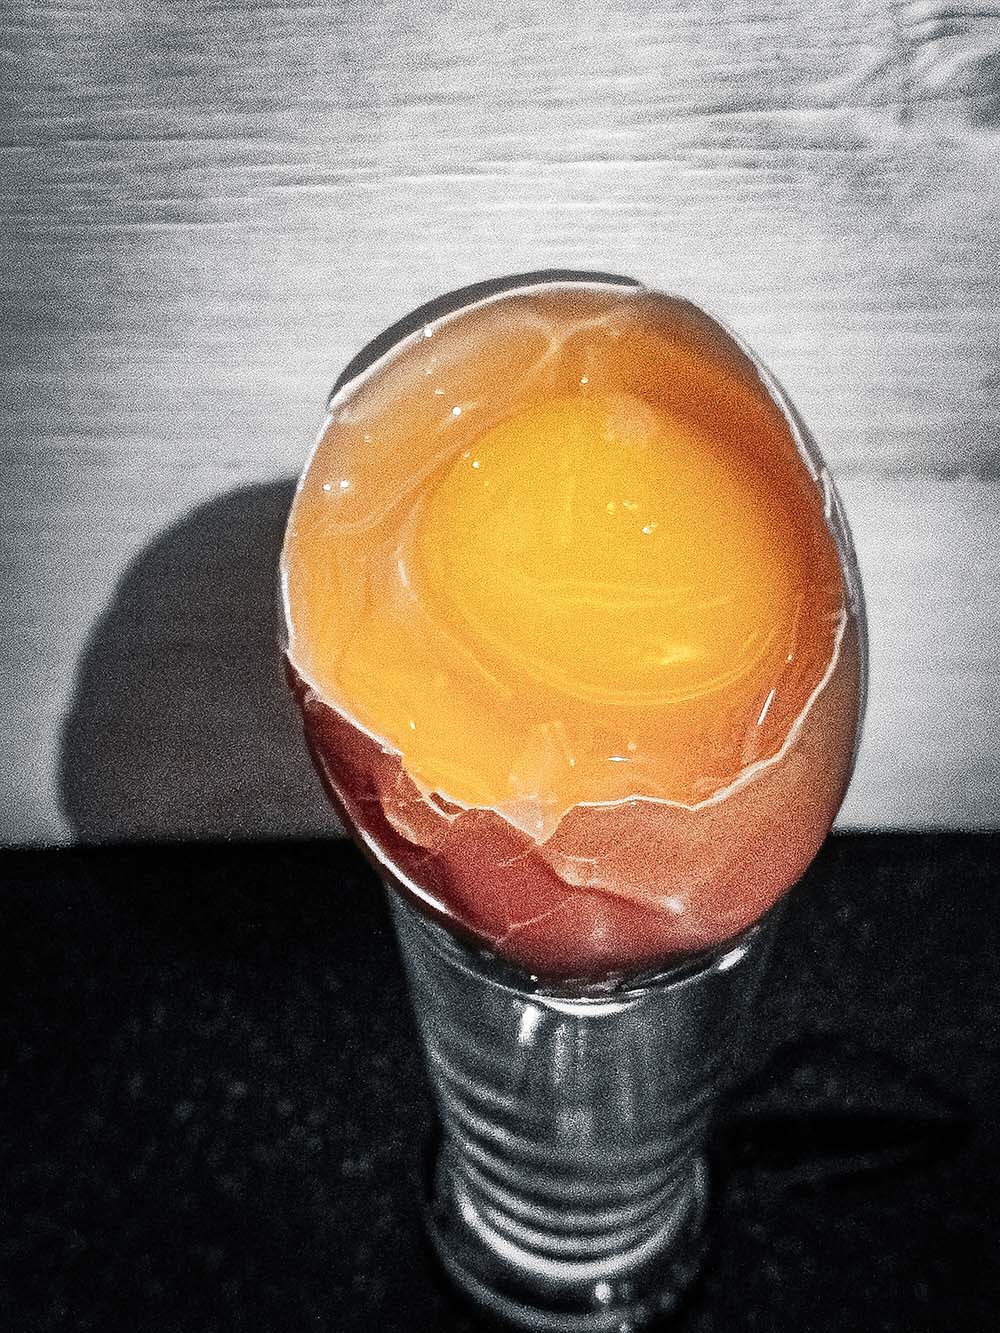 dvoužloutková vejce